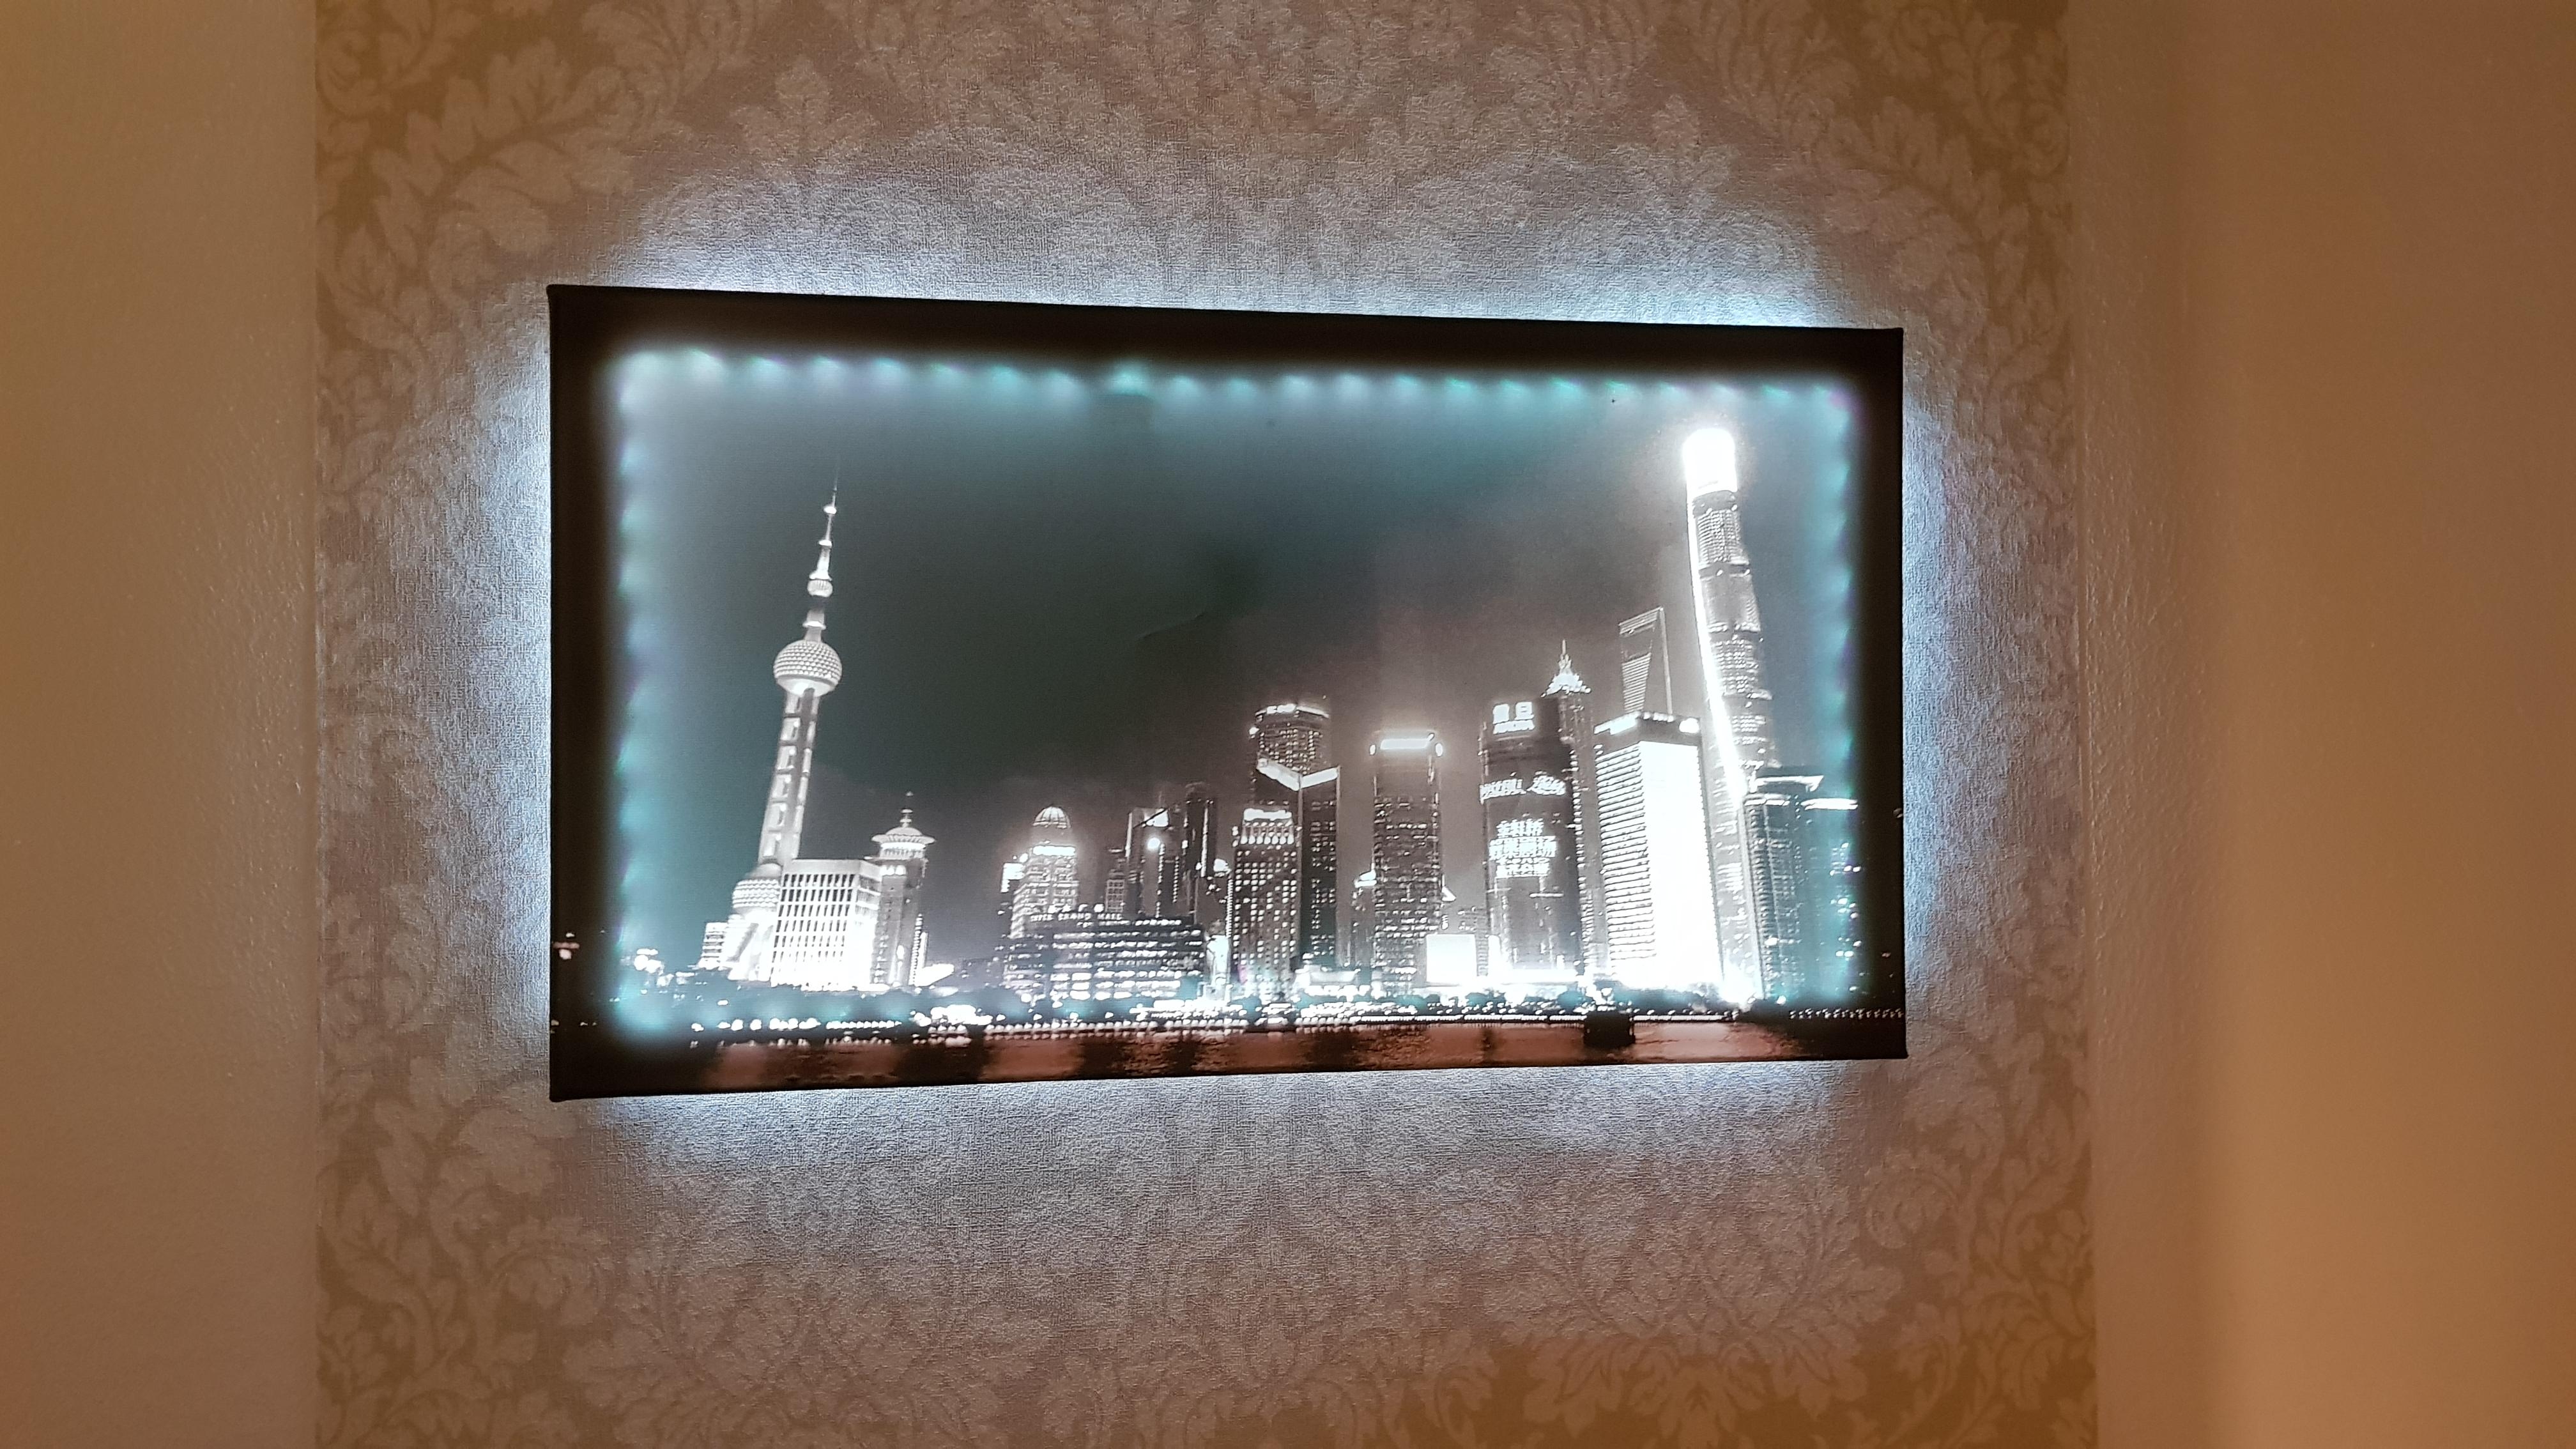 #wandgestaltung #livingchallenge
Das Foto wurde von mir in Shanghai gemacht. Leinwand mit LED 